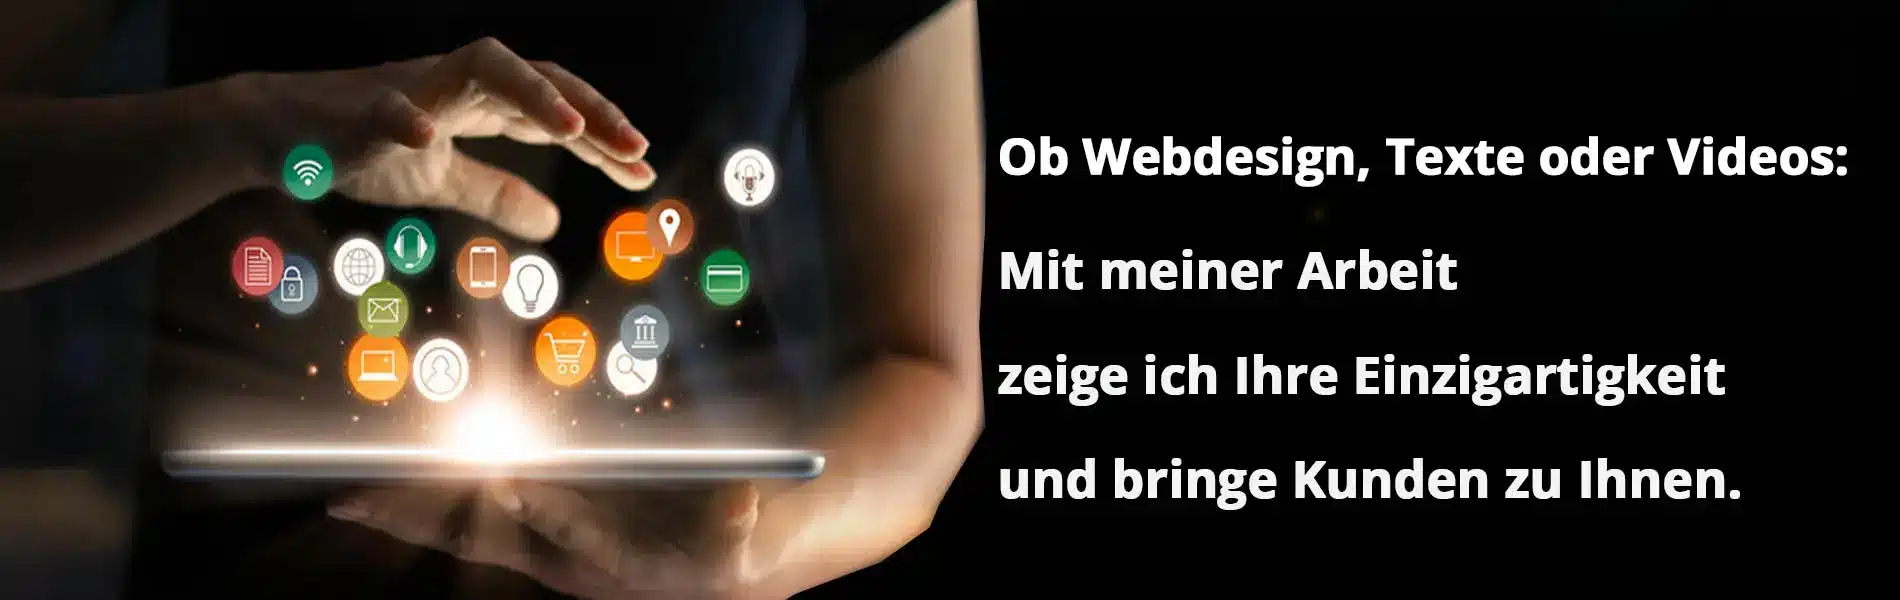 Susanne-Nadler-webdesign-Video-ammersee